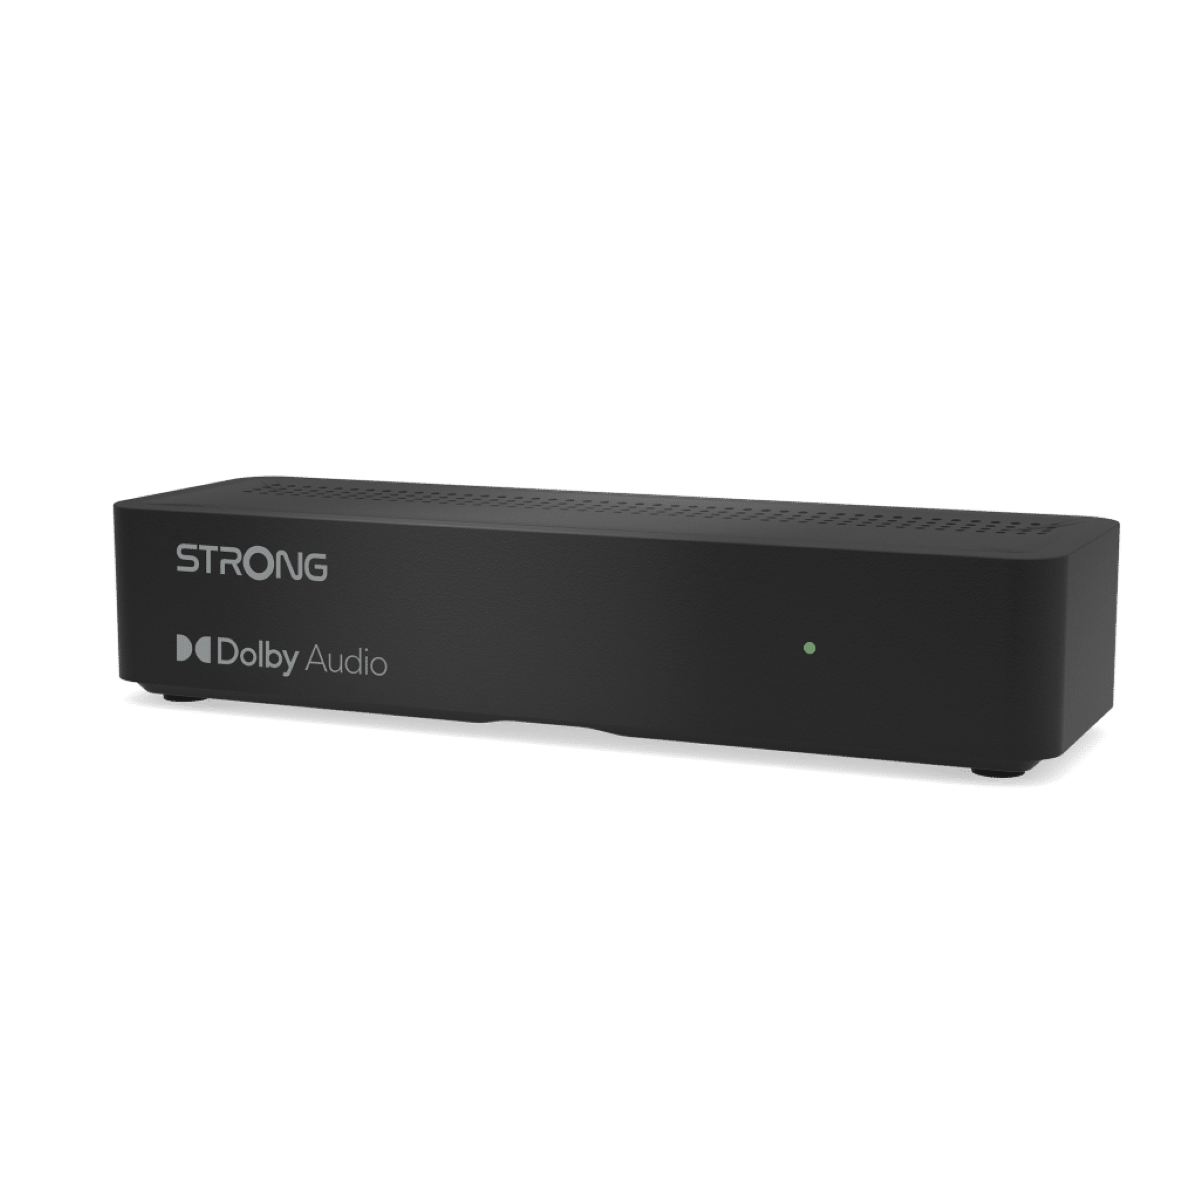 STRONG SRT 7511 HD Sat-Receiver (schwarz)